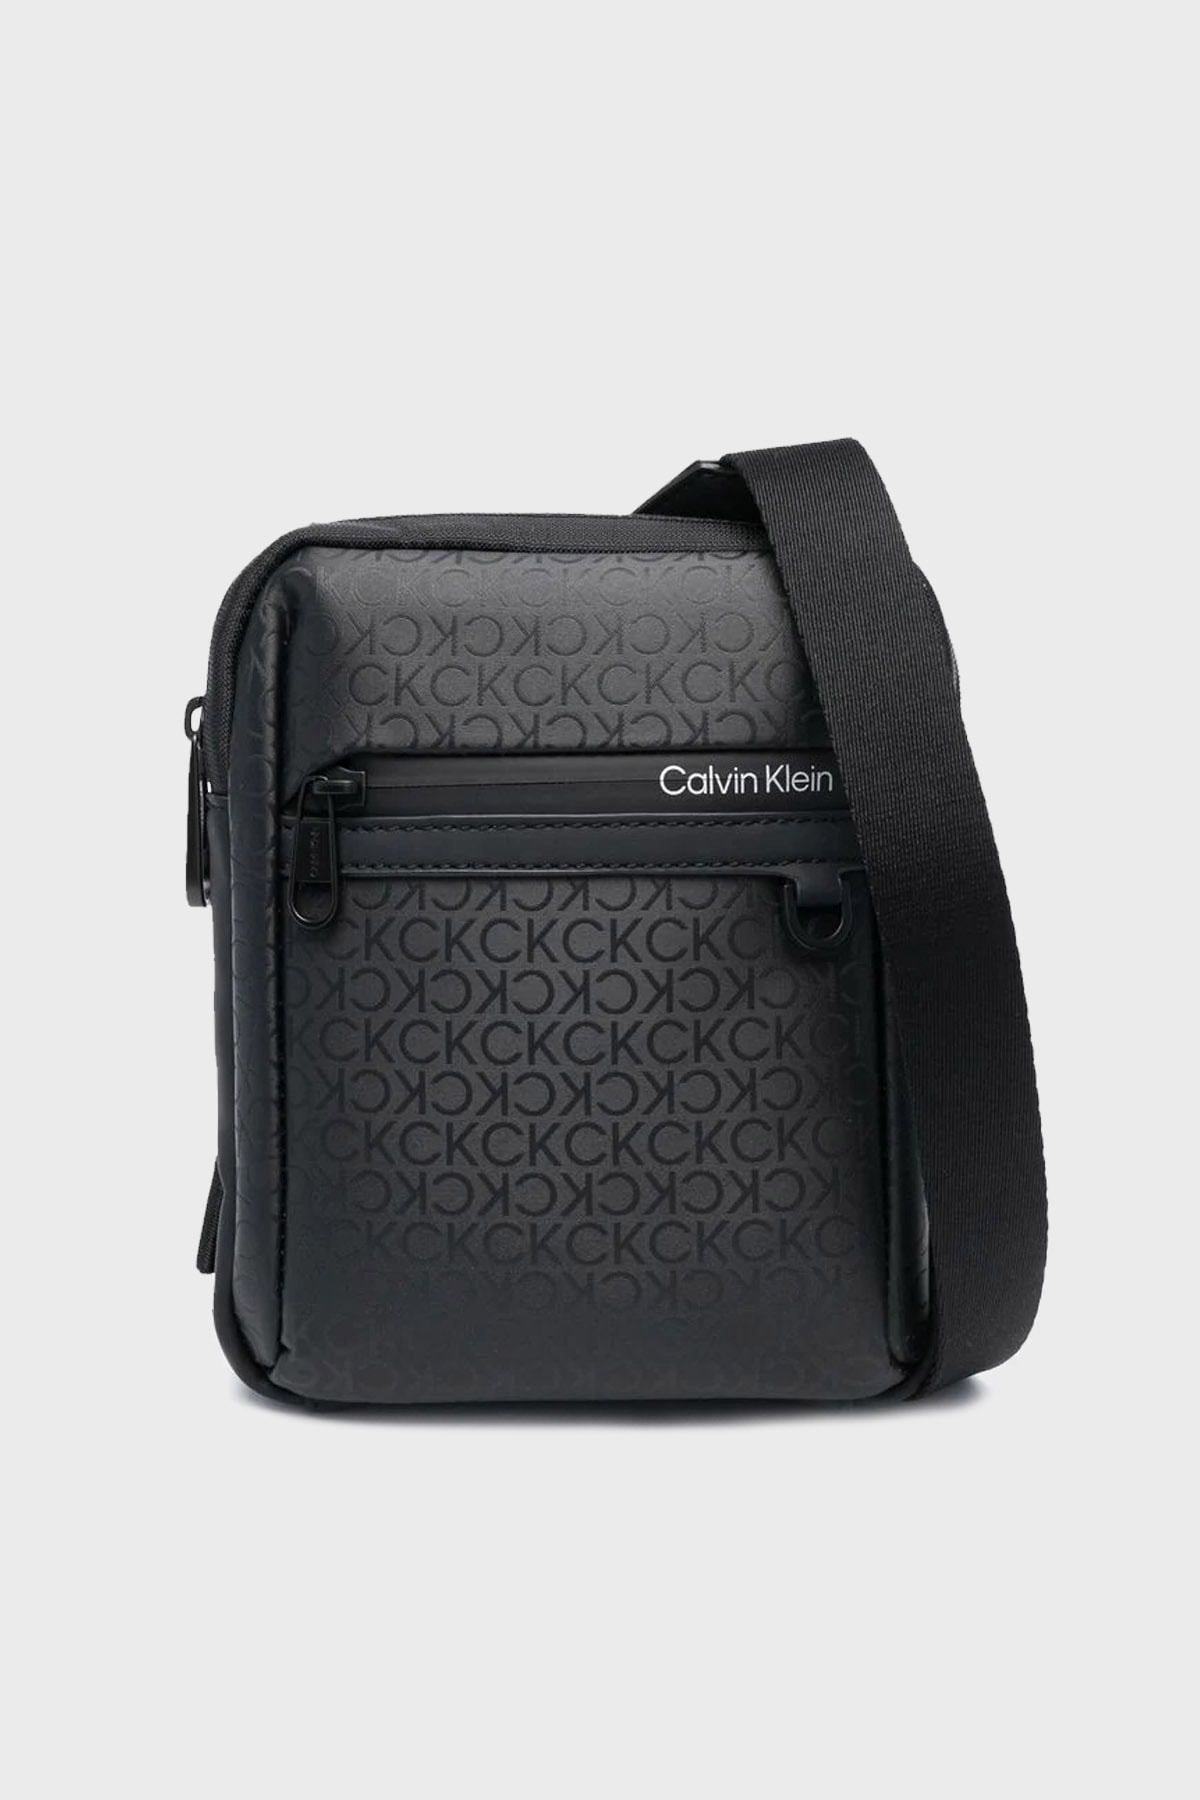 Calvin Klein Tamamı Logo Baskılı Ayarlanabilir Omuz Askılı Çanta Erkek Çanta K50k510031 01ı